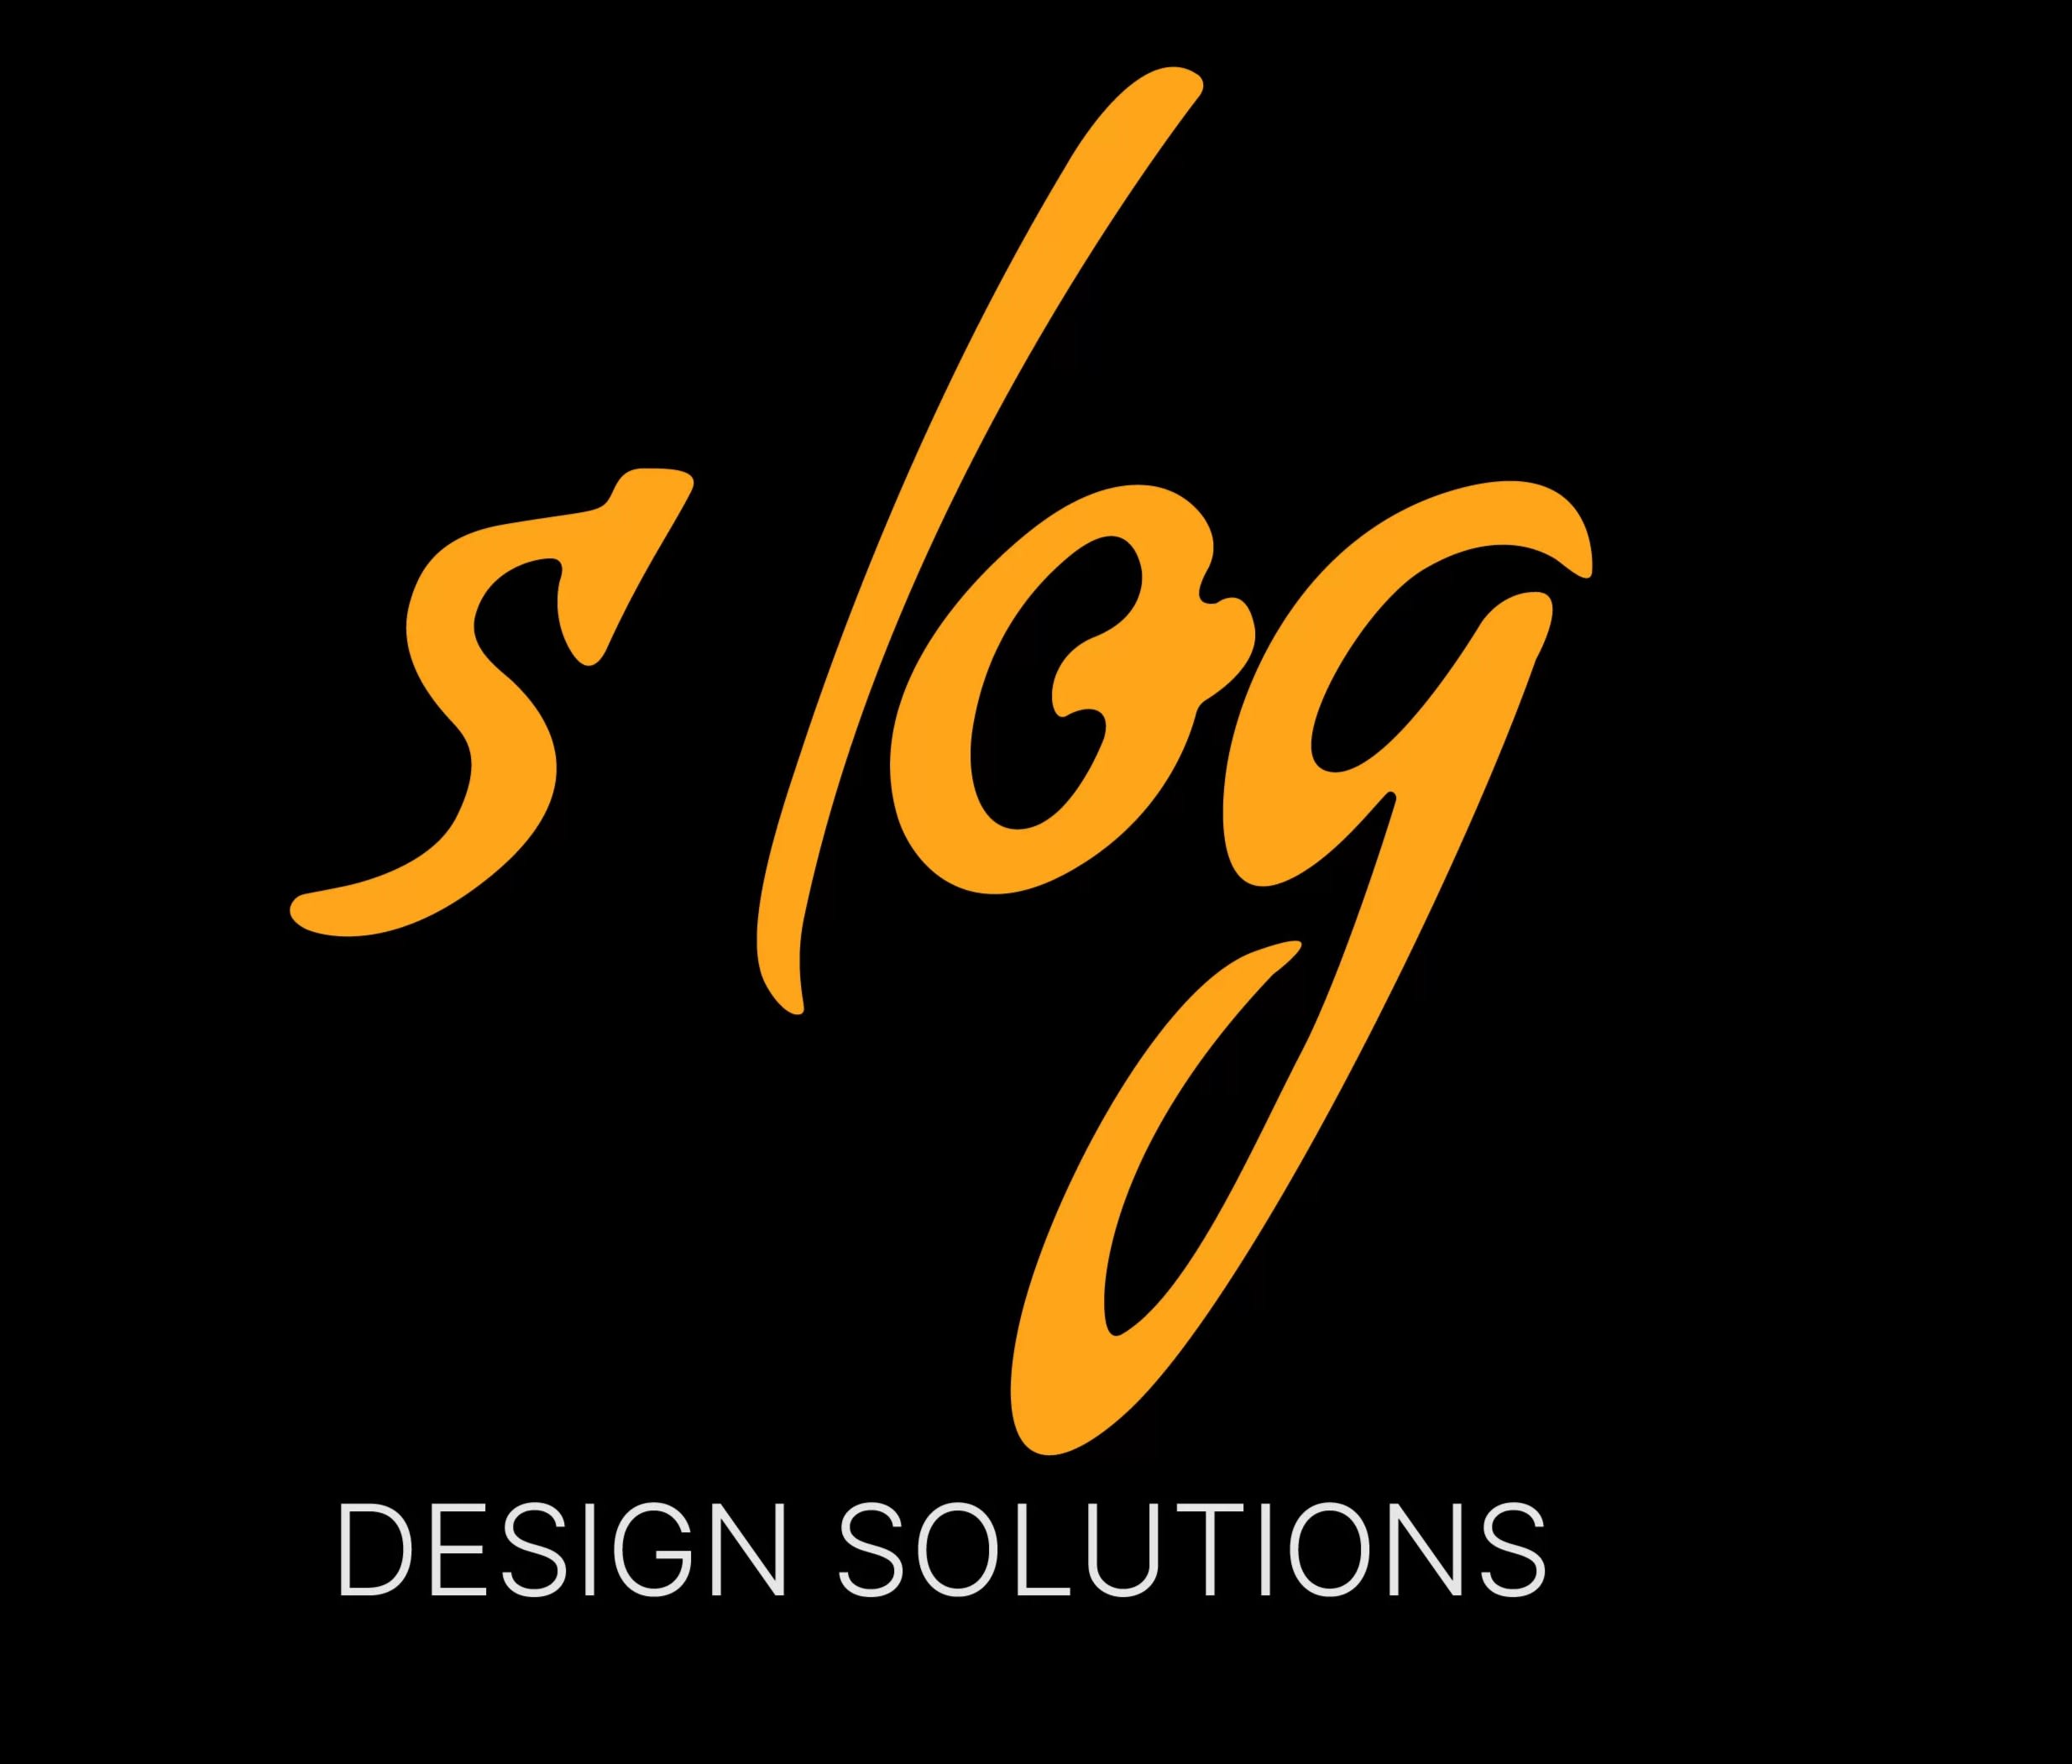 Slog Design Solutions